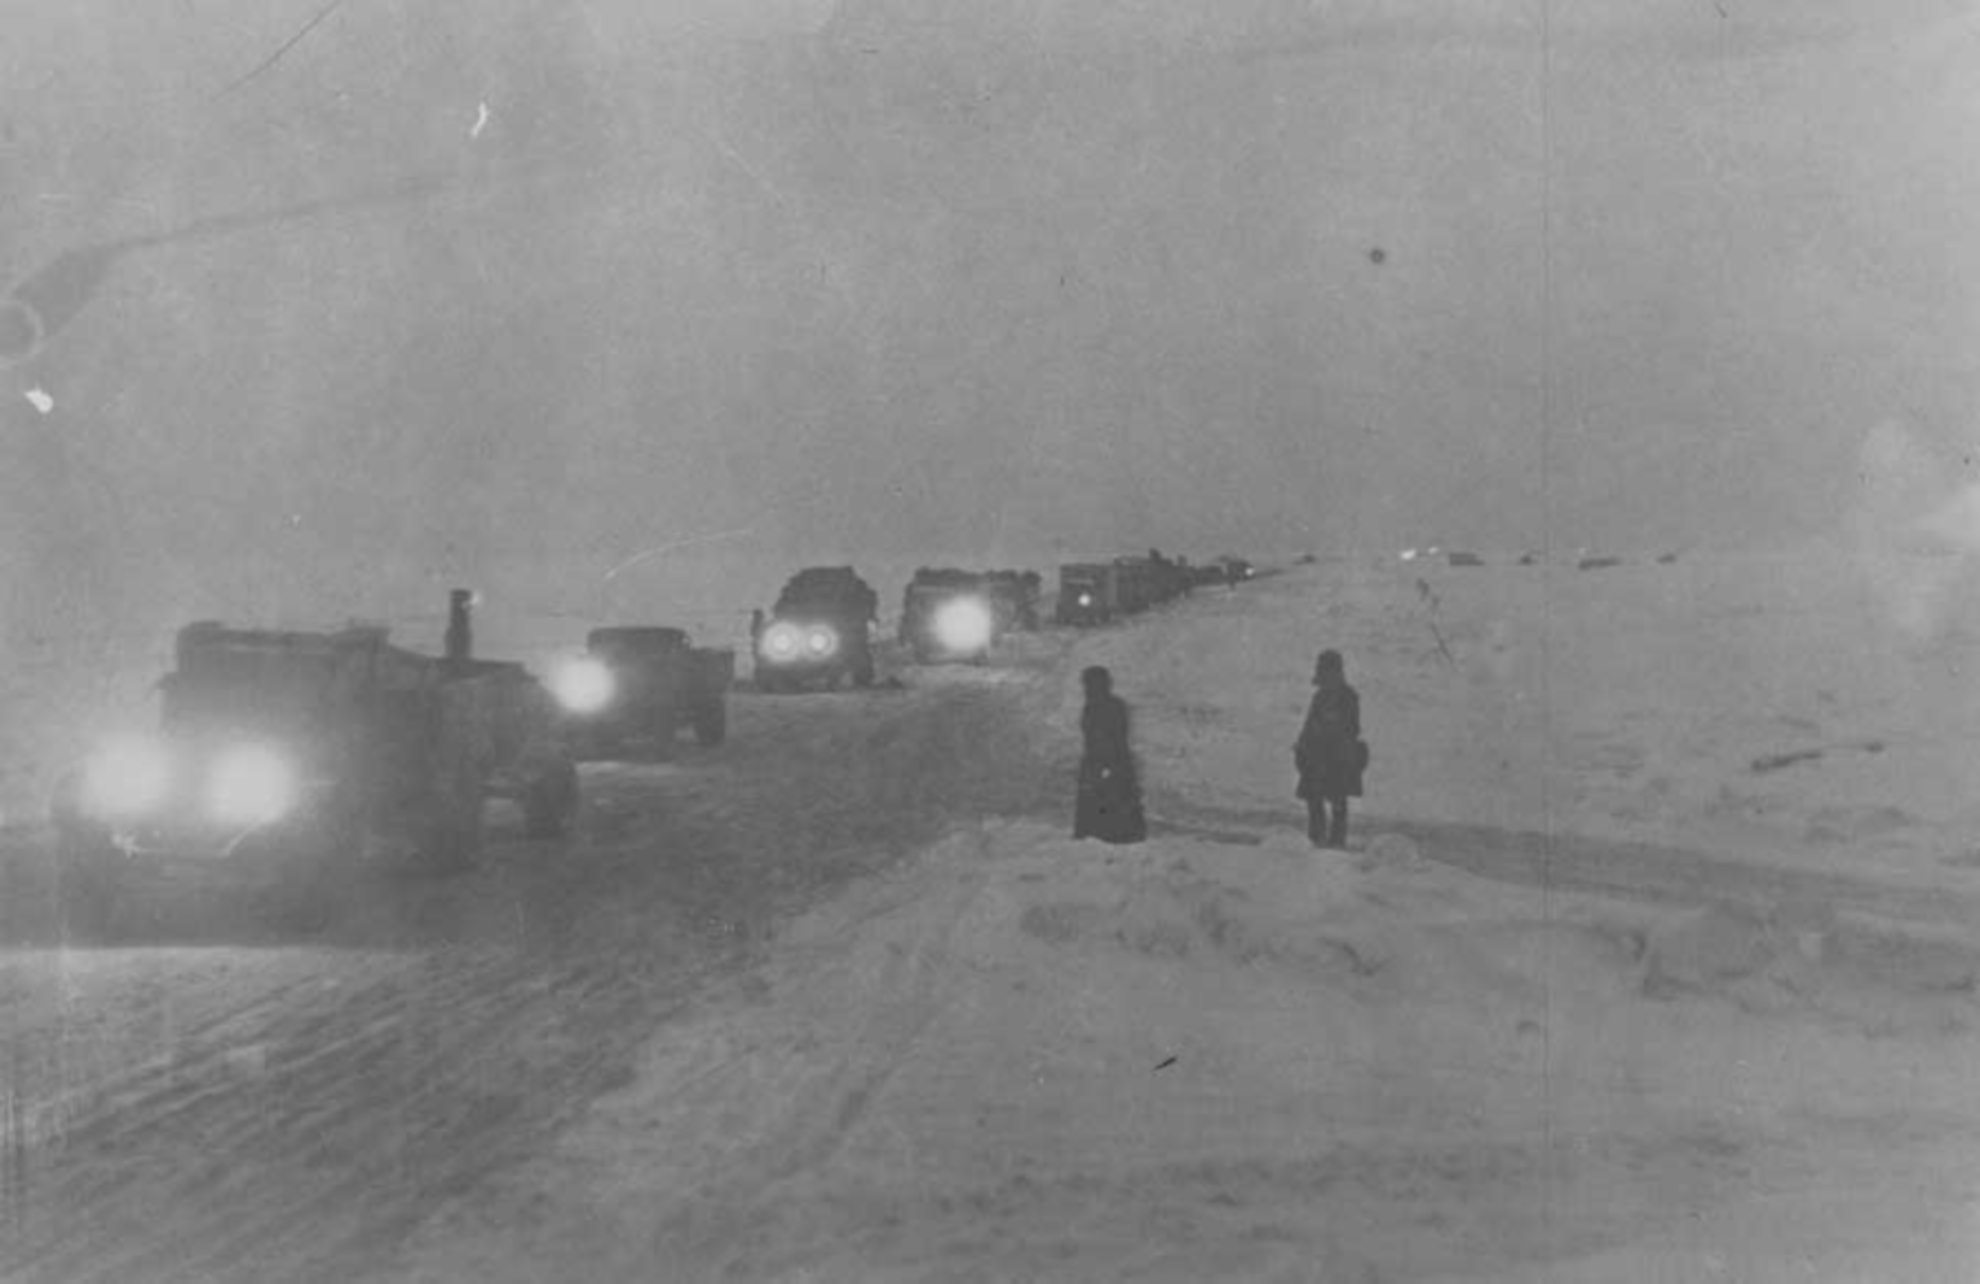 Дорога, проложенная во время блокады Ленинграда по льду Ладожского озера, для доставки оружия и продовольствия. Ленинград 1941 г